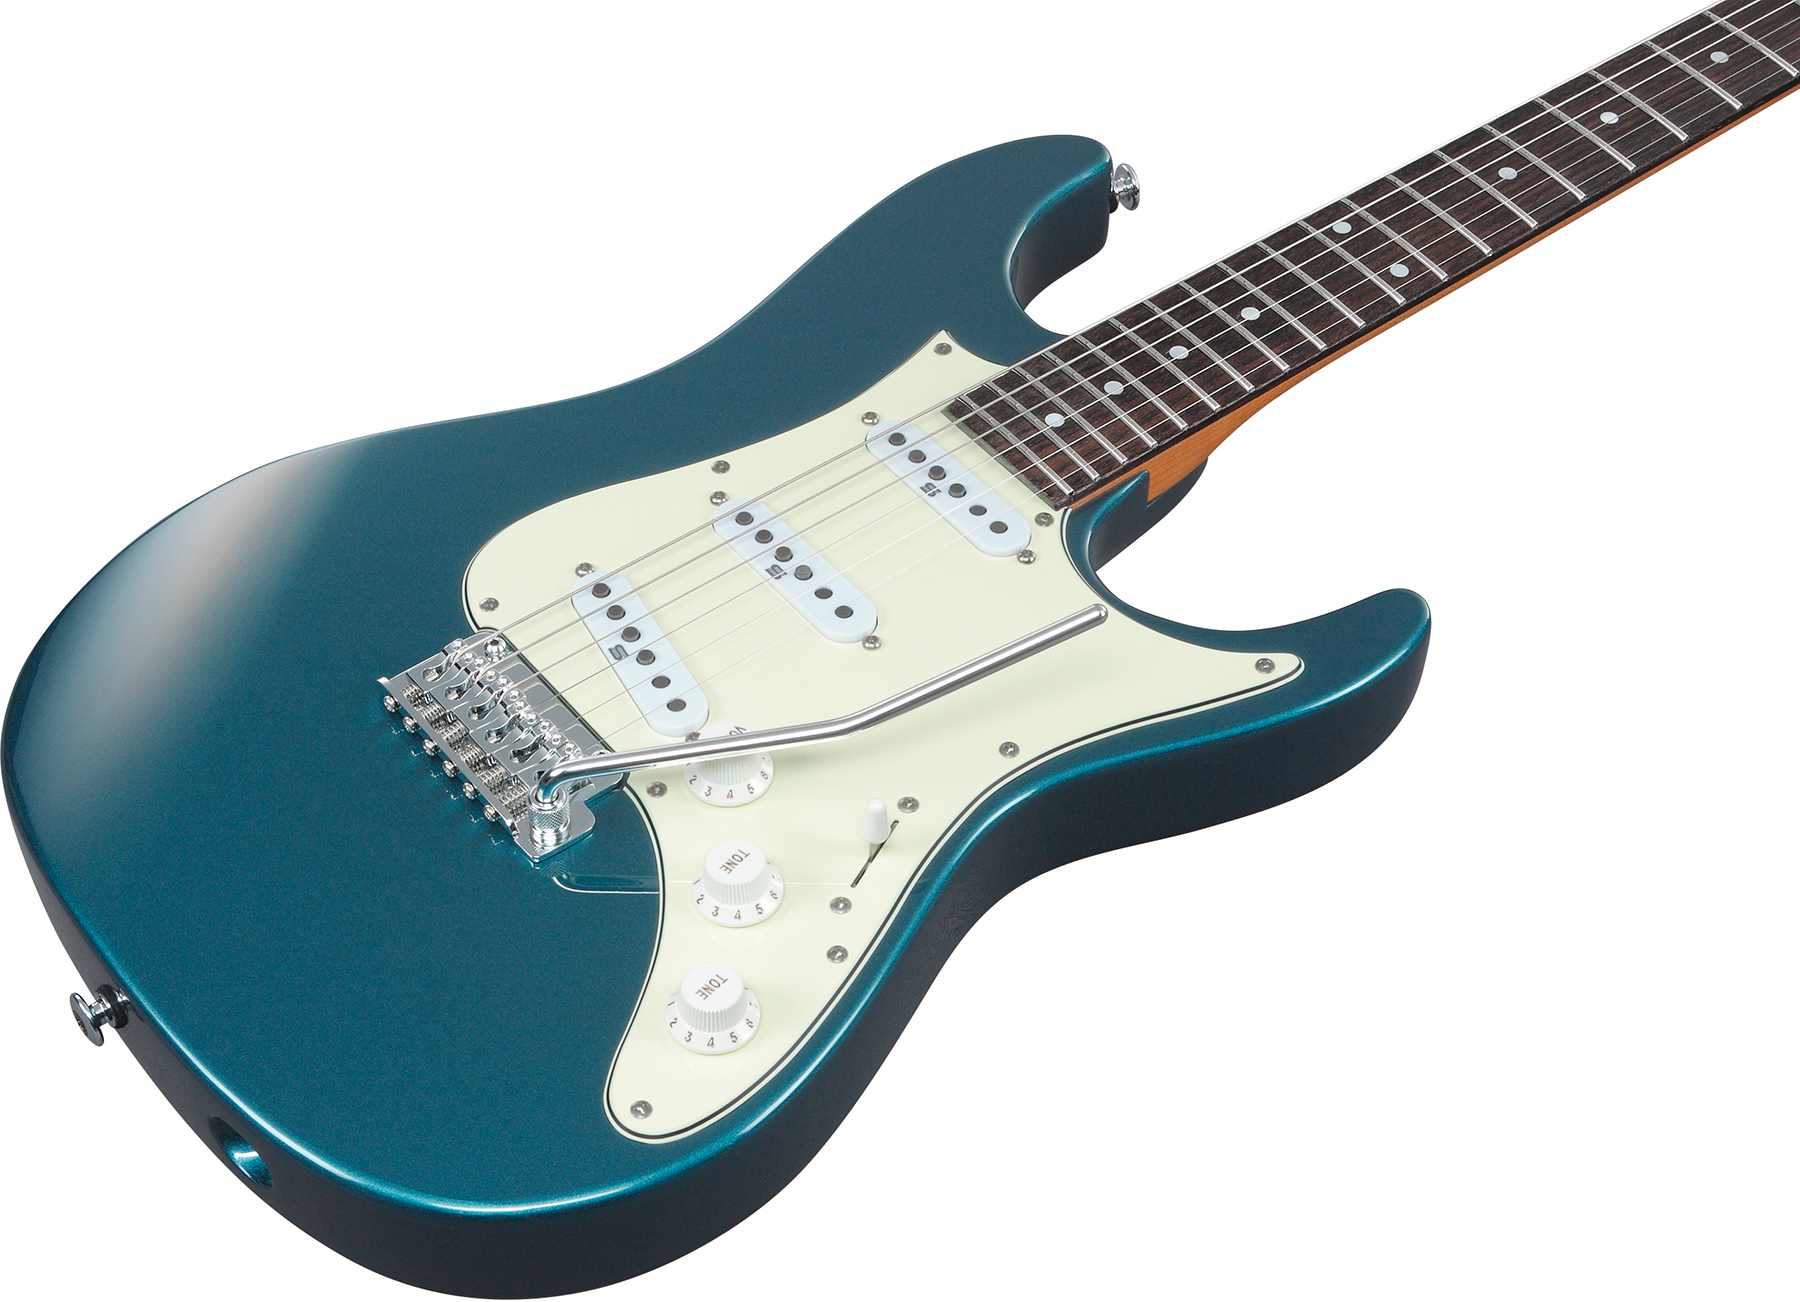 Ibanez Az2203n Atq Prestige Jap 3s Seymour Duncan Trem Rw - Antique Turquoise - Guitarra eléctrica con forma de str. - Variation 2